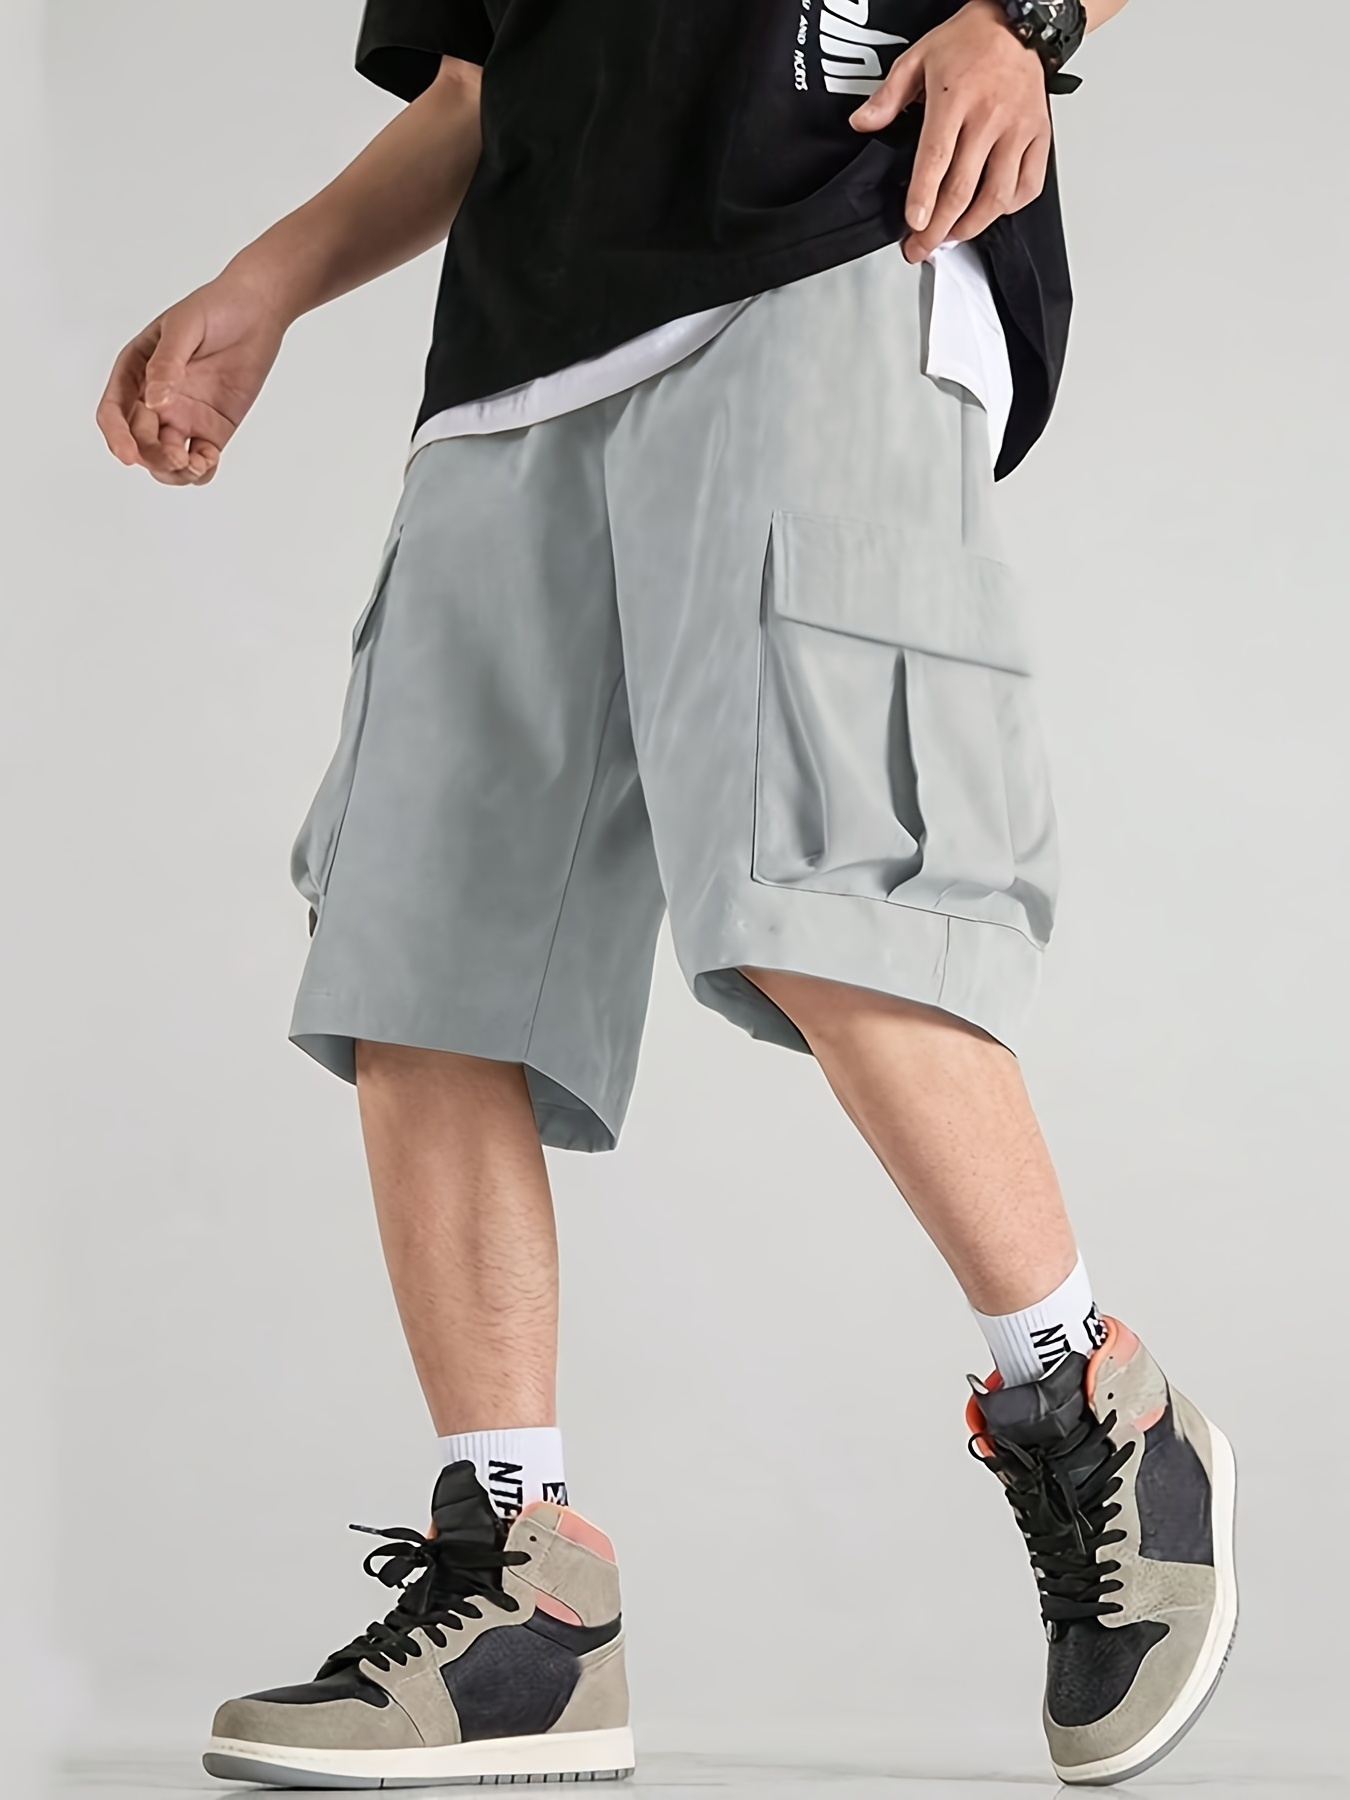 Pantalones Cortos Deportivos Para Hombre Para Gimnasio Deportes  Entrenamiento